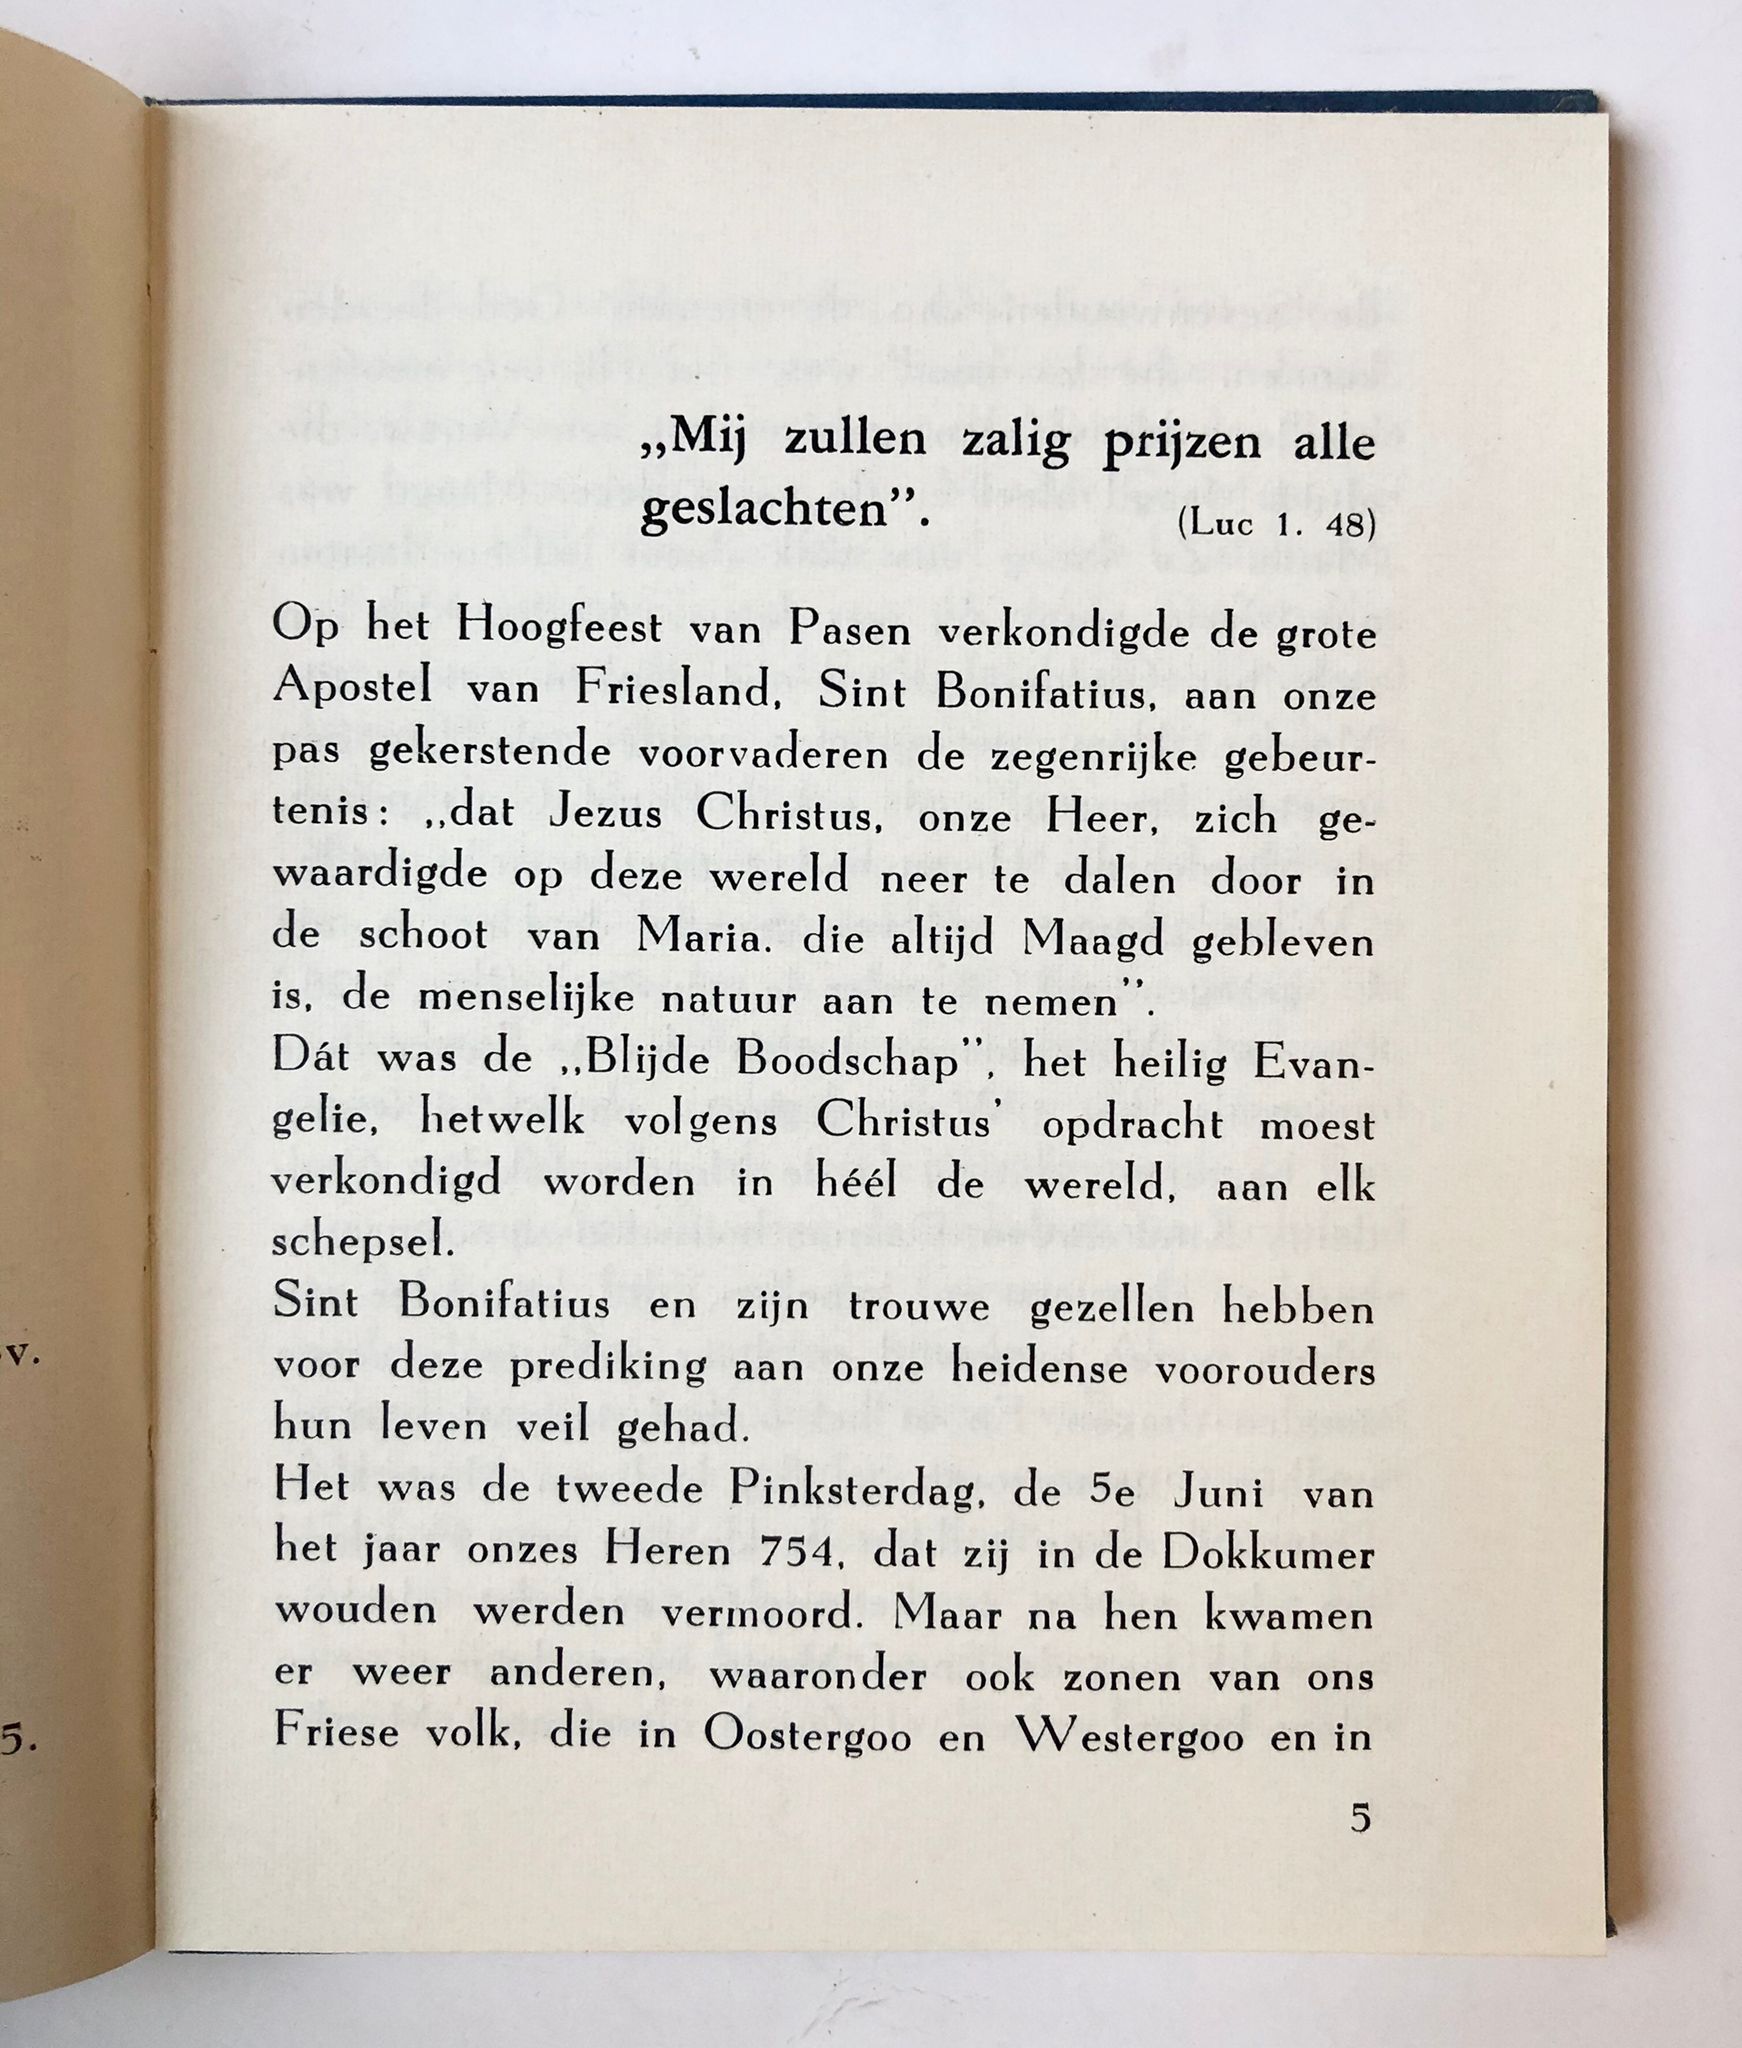 [Friesland] De Friese lieve vrouw, onze lieve vrouw van Sevenwouden, “Het witte boekhuyis”, Het witte Boekhuis, Bolsward, [before 1973], 68 pp, numbered copy.